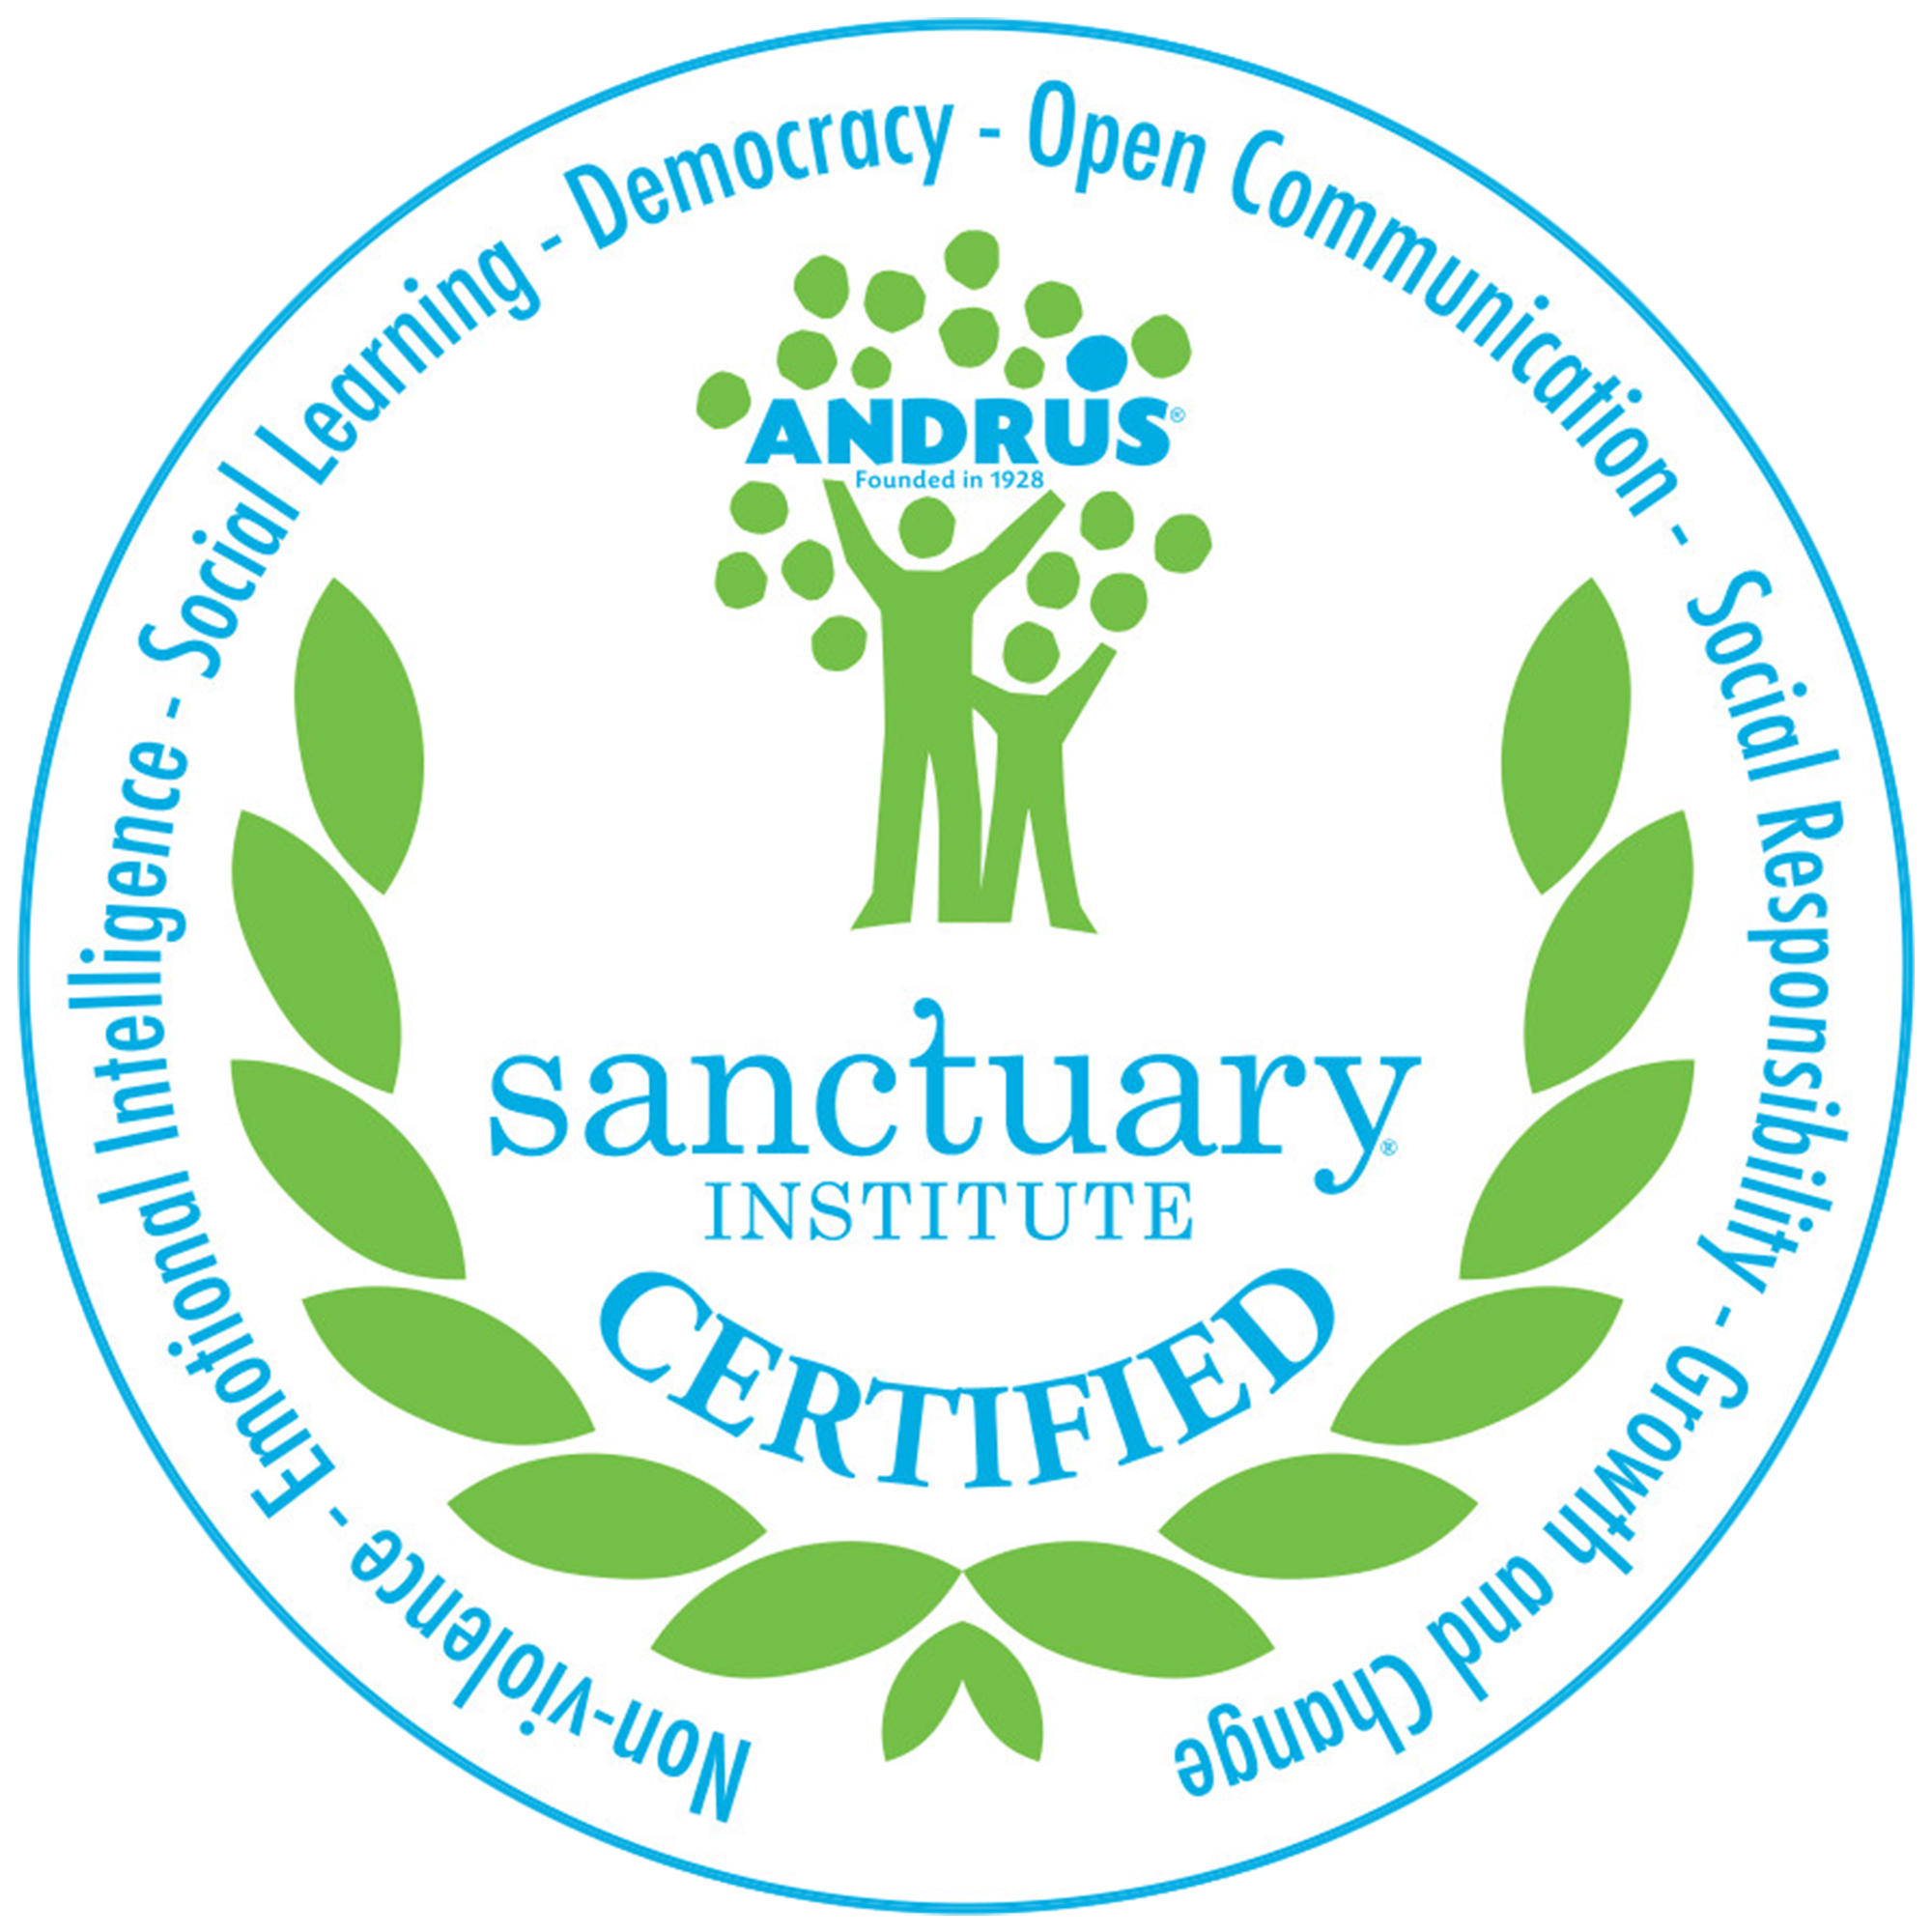 The Sanctuary Institute